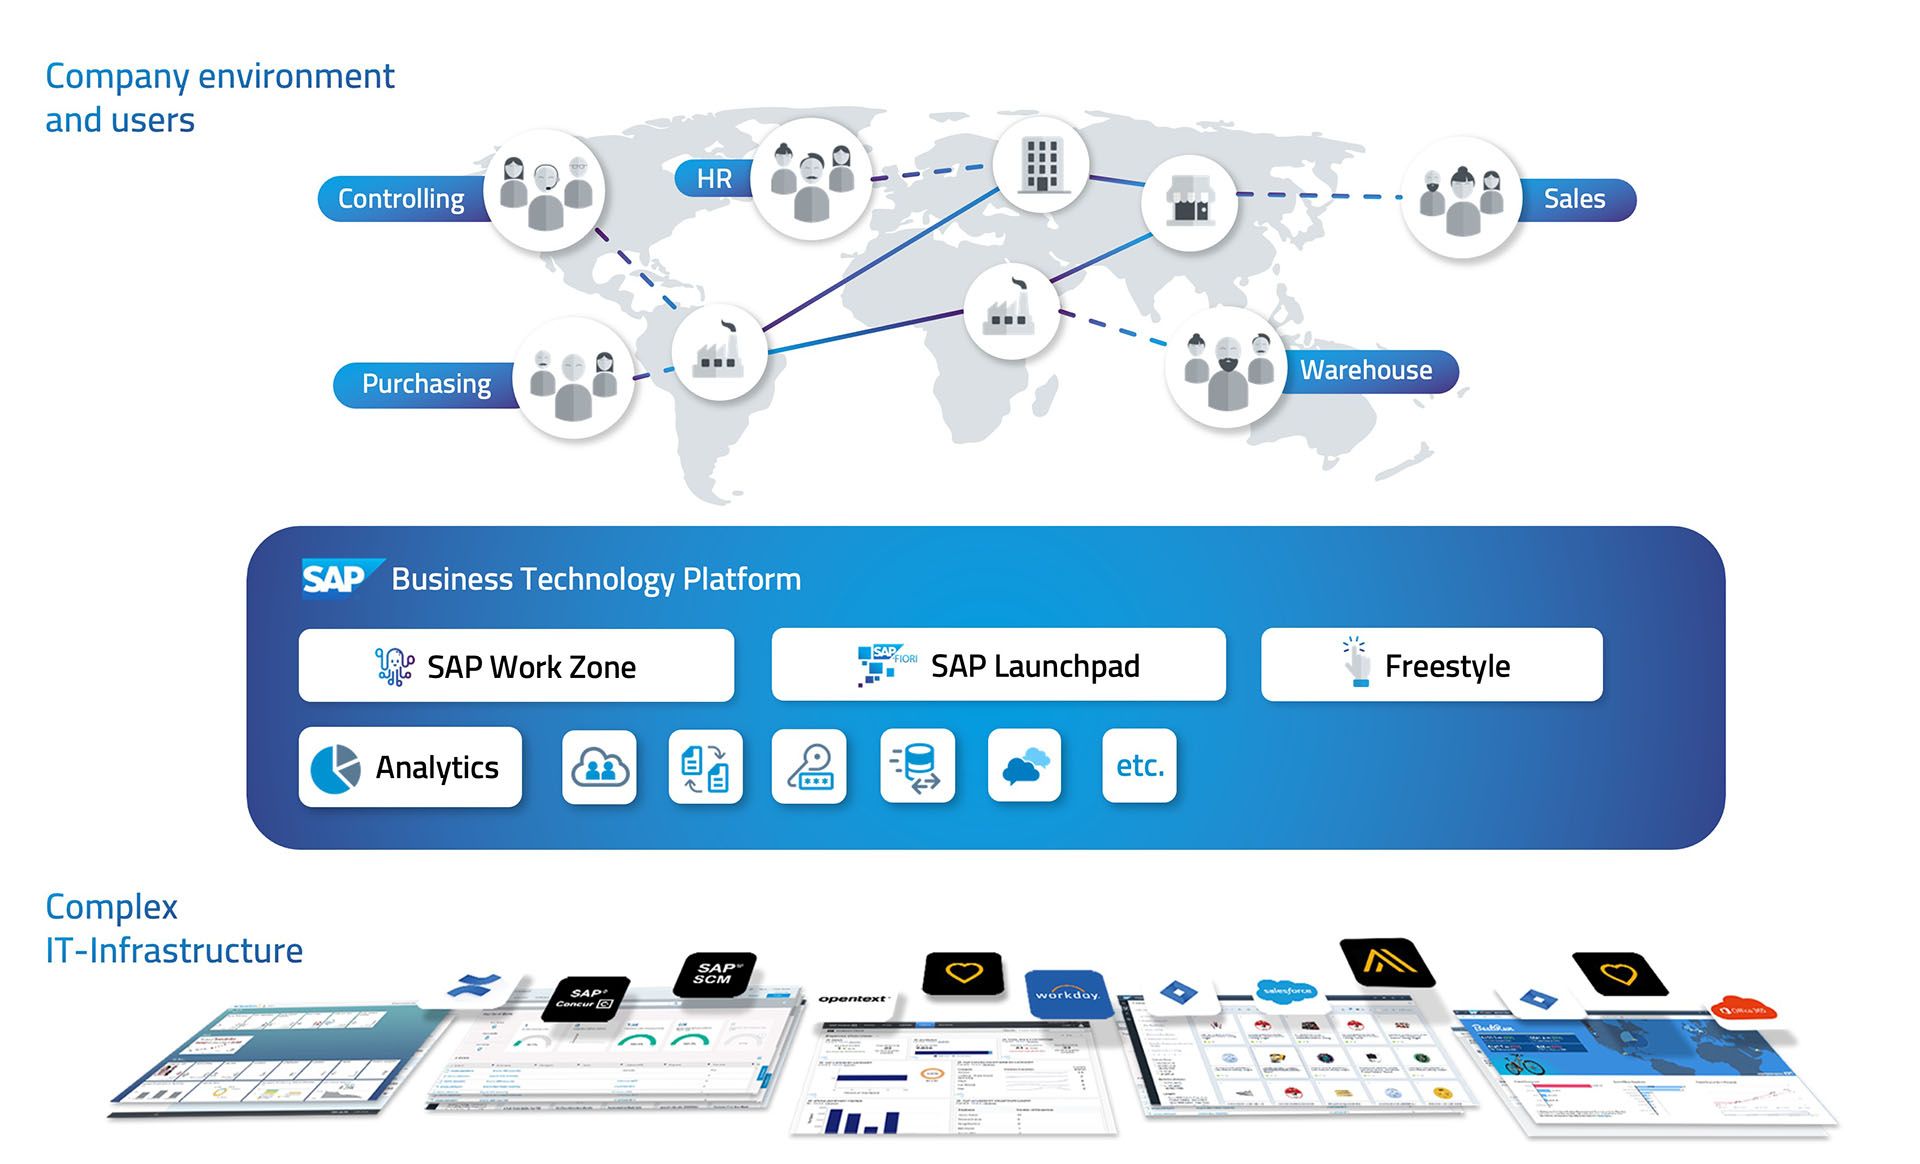 SAP BTP as an innovation and development platform